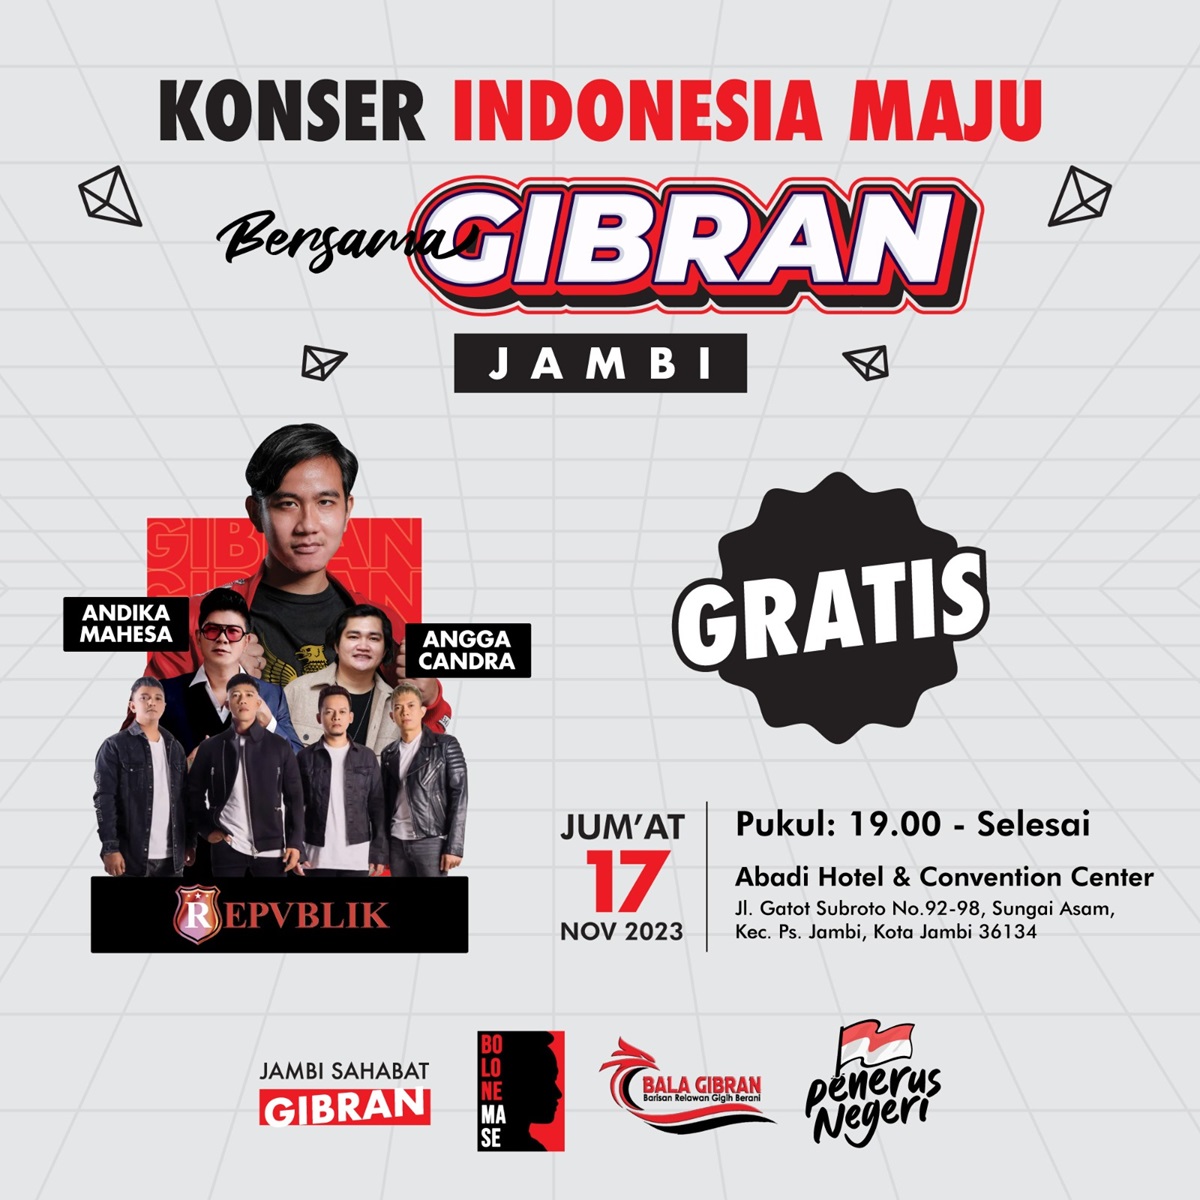 Jumat 17 November 2023, Cawapres Gibran Datang ke Jambi, Gelar Konser Indonesia Maju